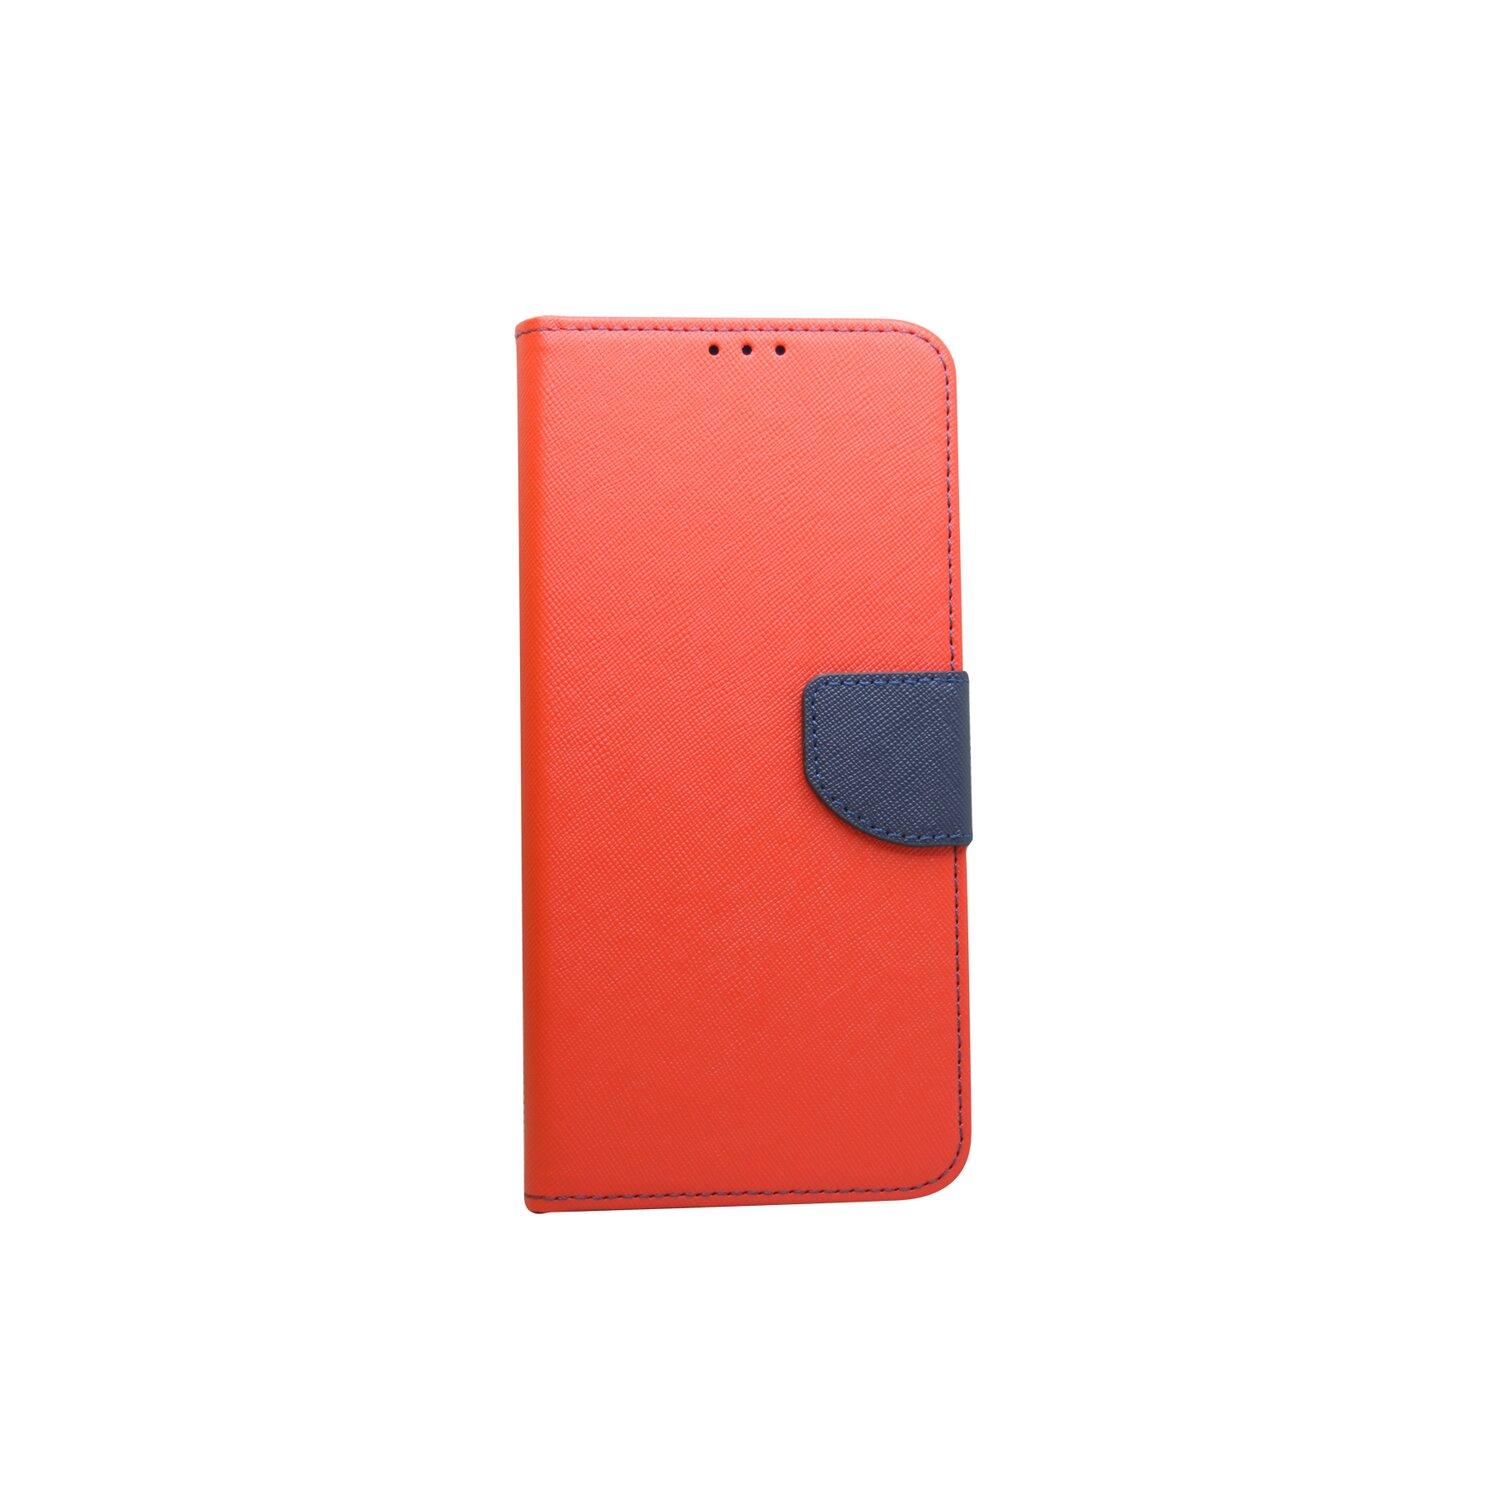 Galaxy Samsung, Bookcover, Rot-Blau A03s COFI Buch-Tasche, ), (A037G